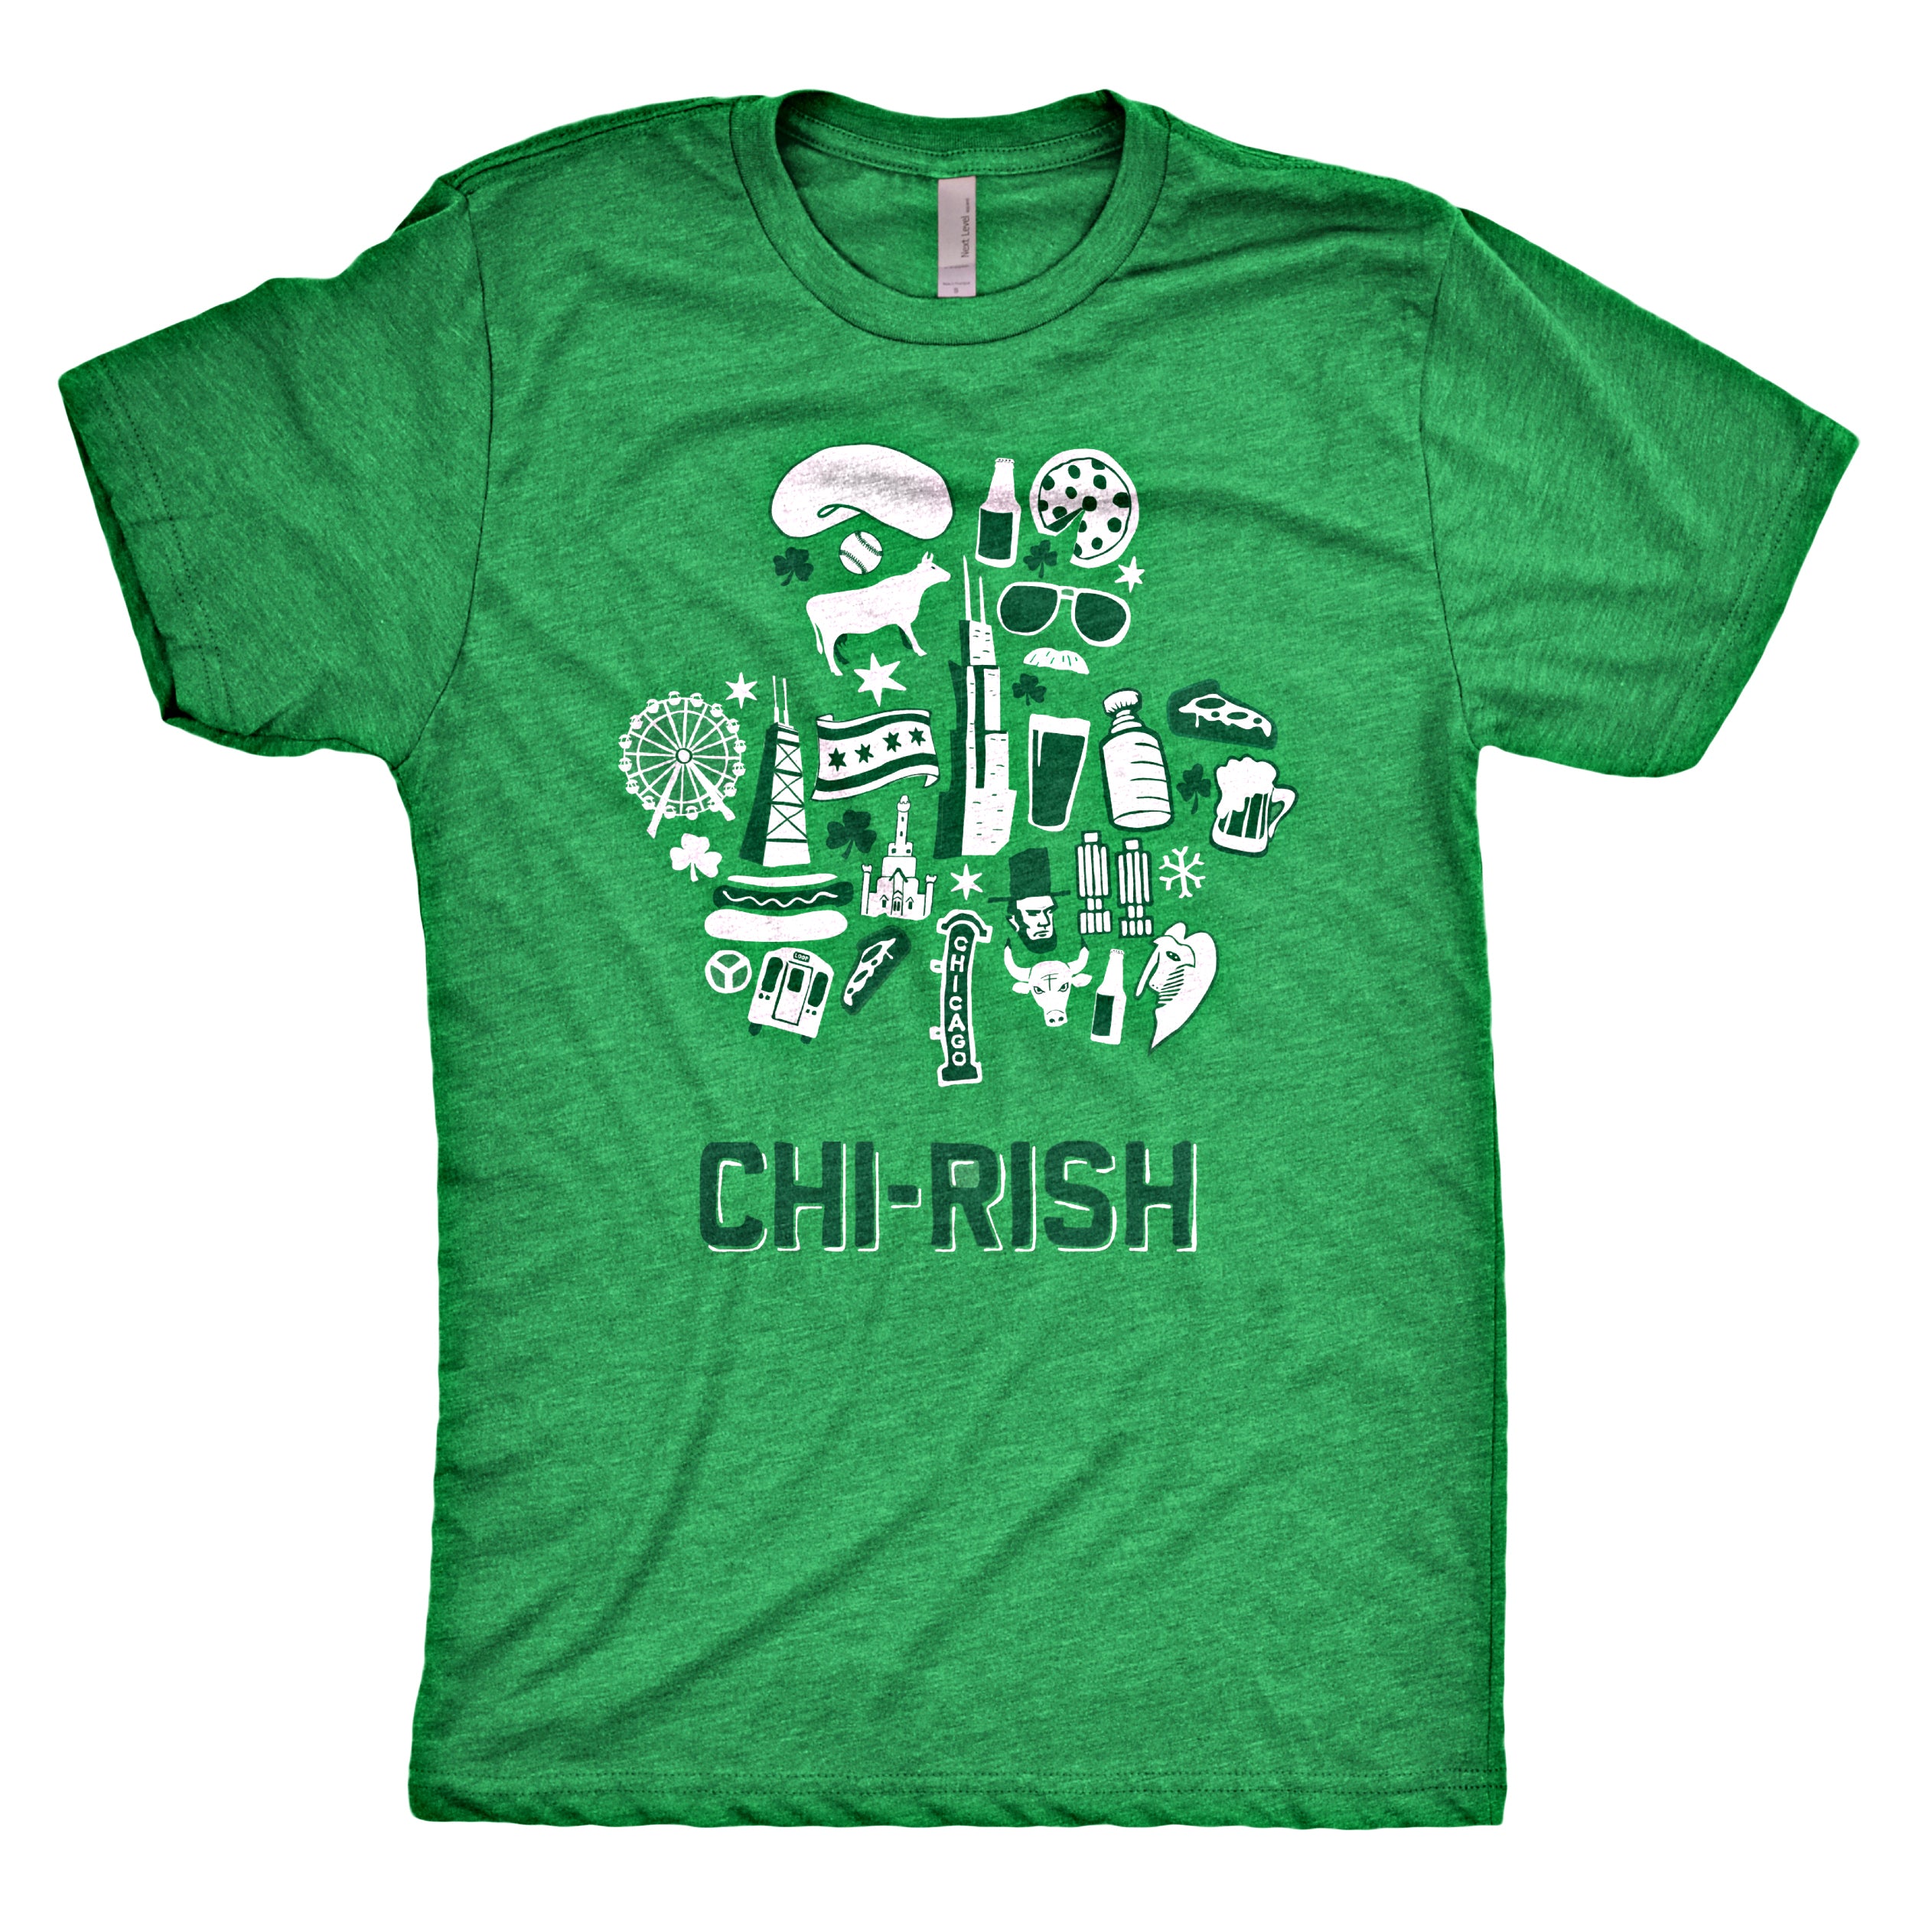 CHI-Rish Shirt